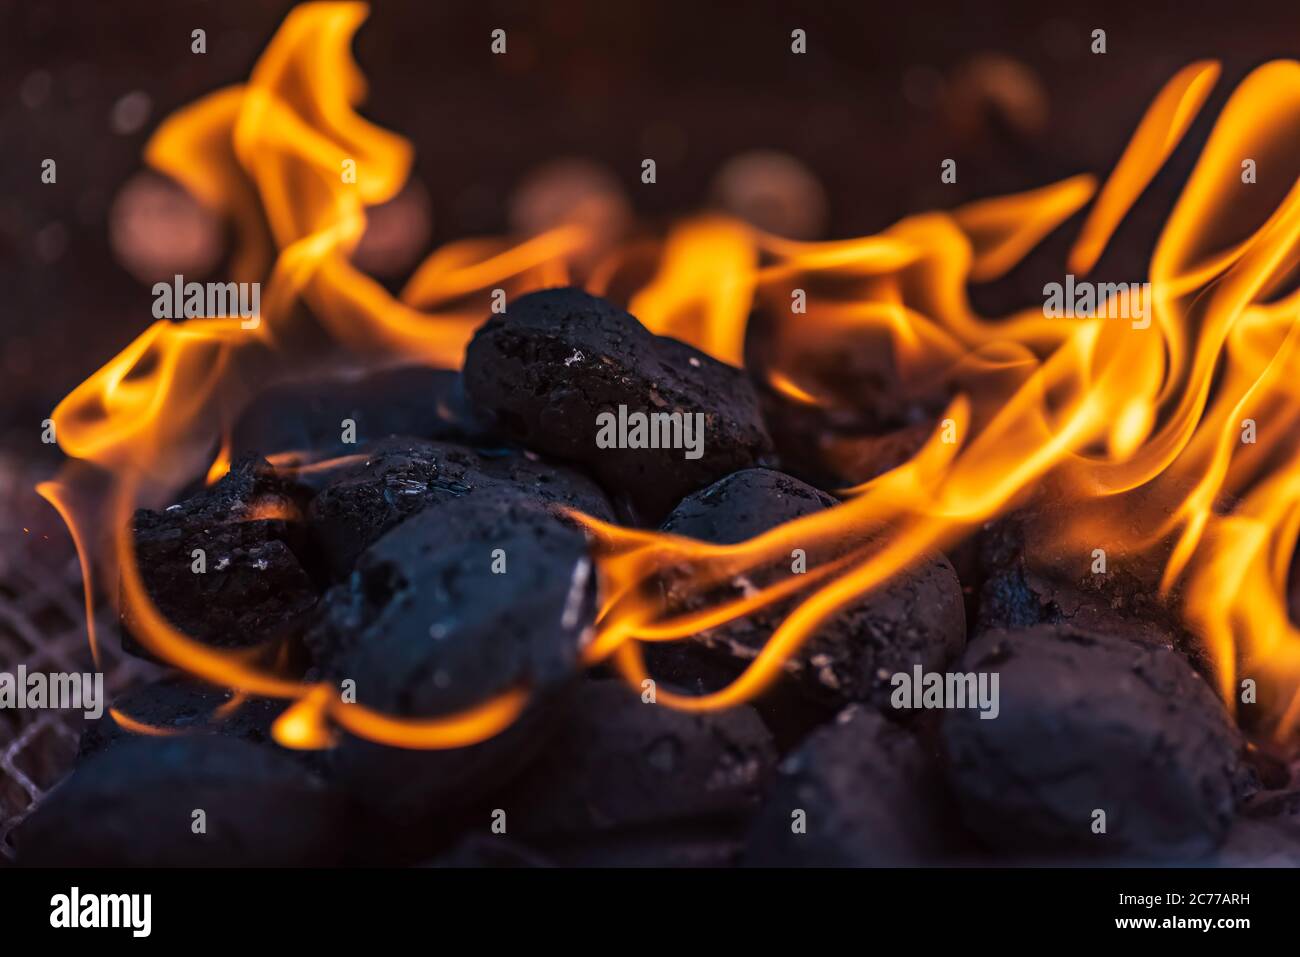 Grillbriketts, die brennen und warten, zum Grillen glüht zu werden,  Briketts werden aus Braunkohle, Torf, Holzkohle oder Kohlestrub hergestellt  Stockfotografie - Alamy